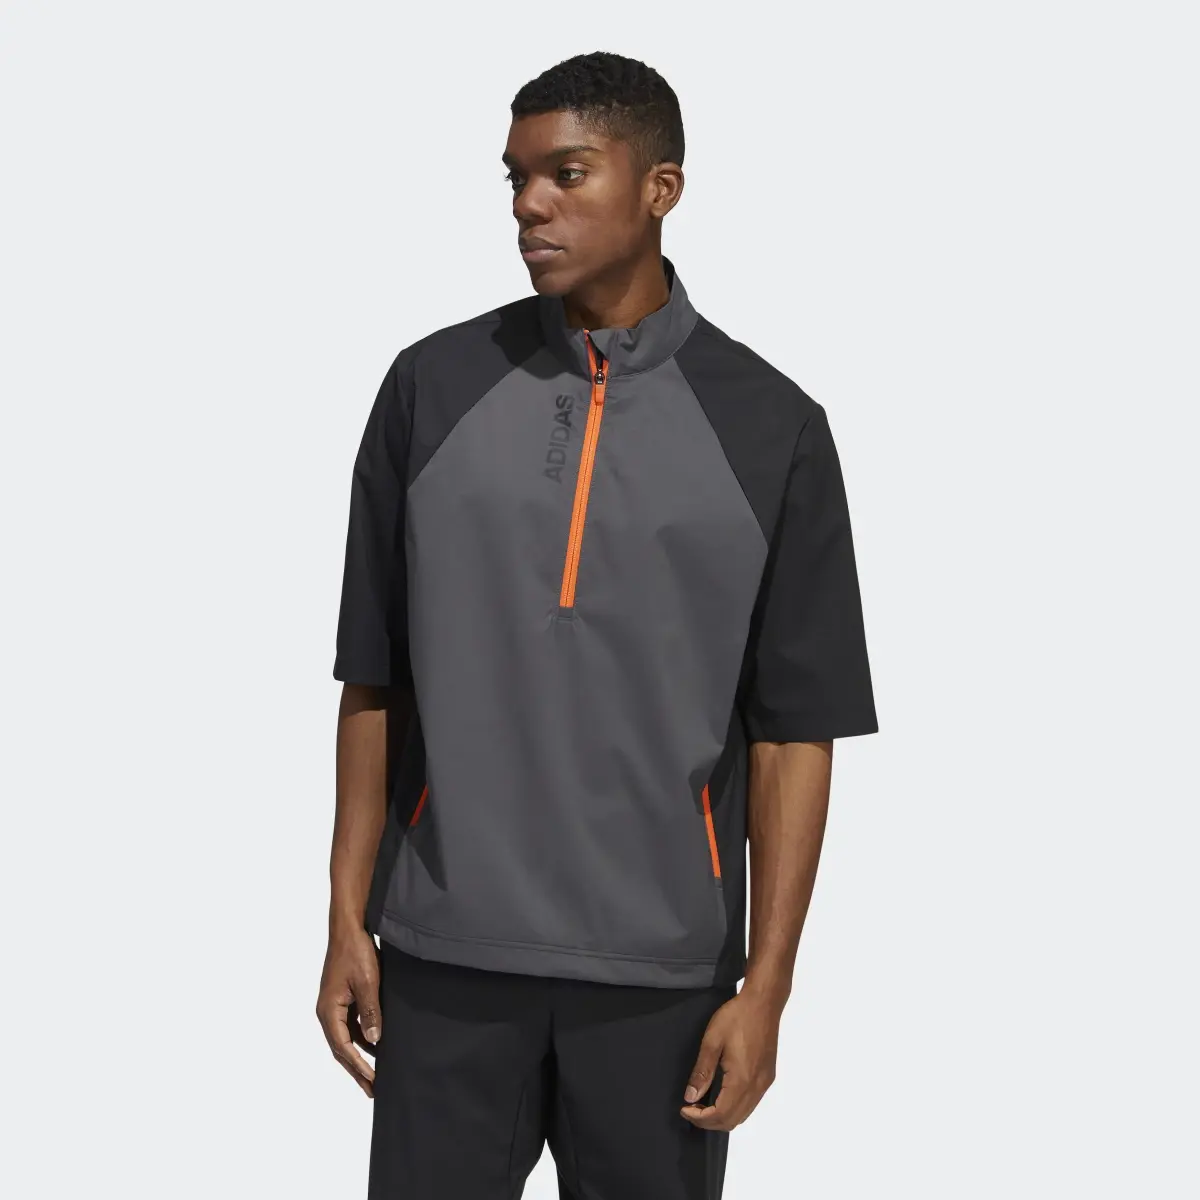 Adidas Provisional Short Sleeve Jacket. 2